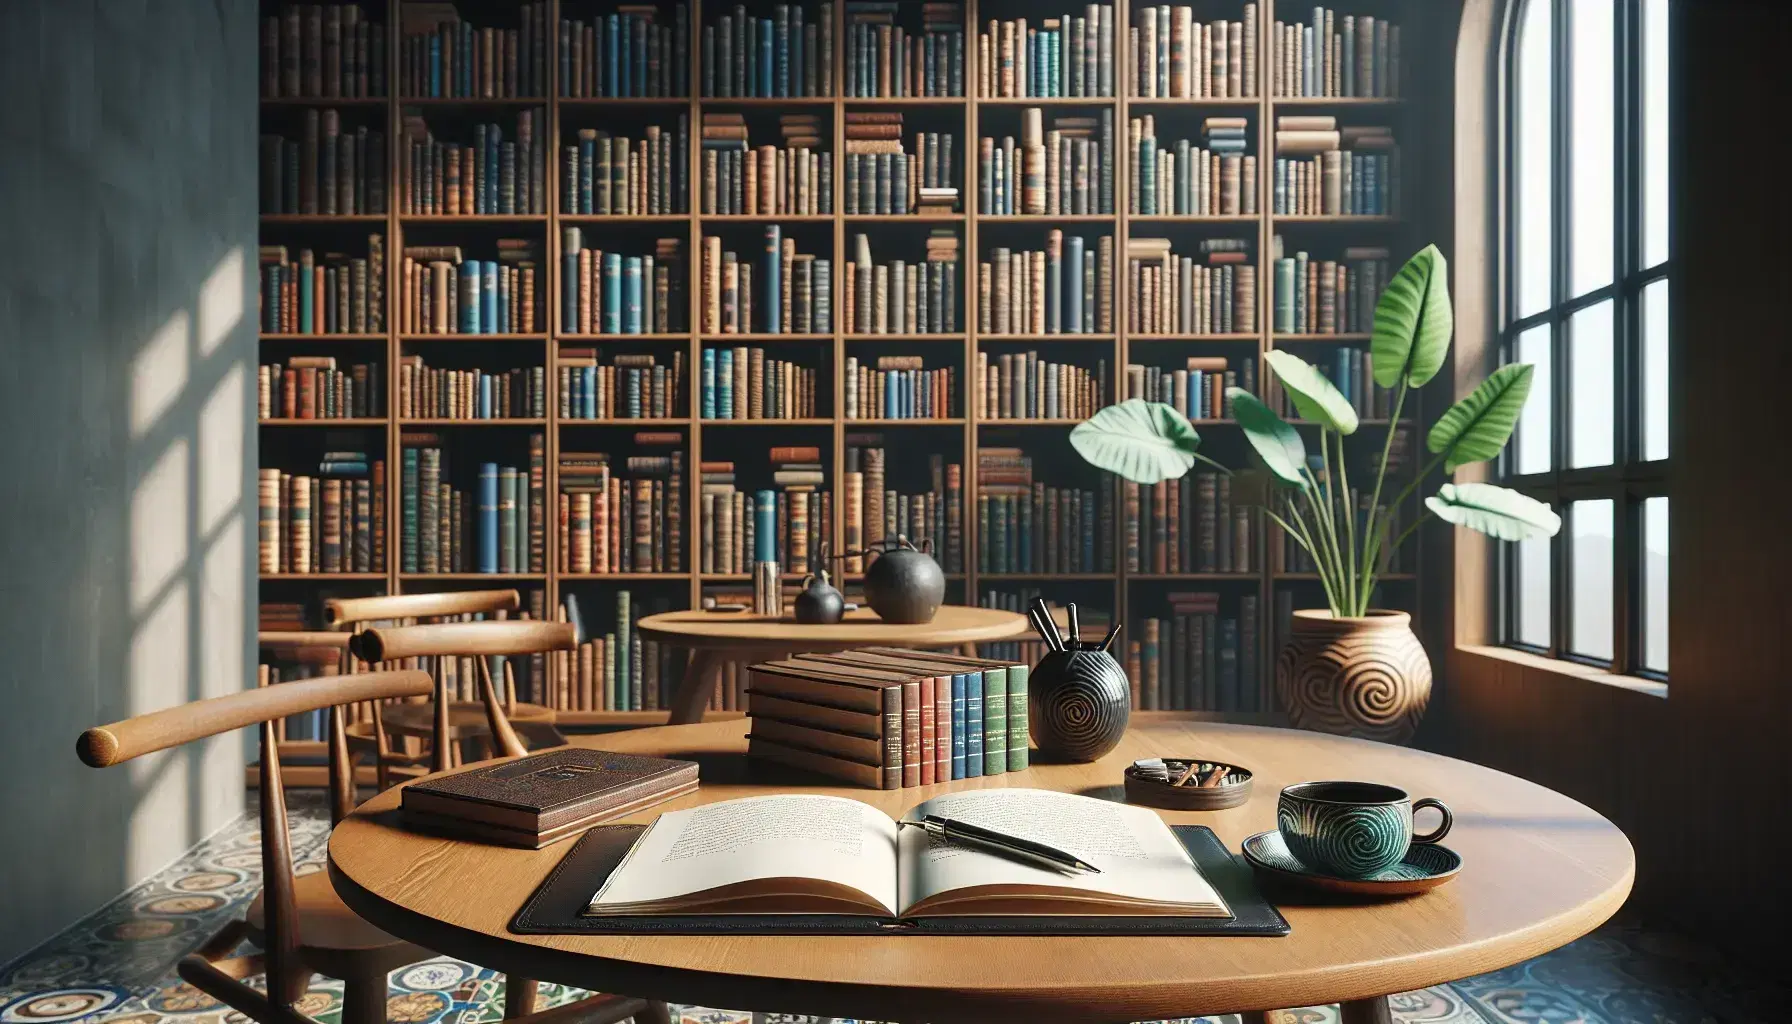 Biblioteca acogedora con estantes de madera oscura repletos de libros coloridos, mesa con cuaderno abierto y taza de café, luz natural y planta verde.